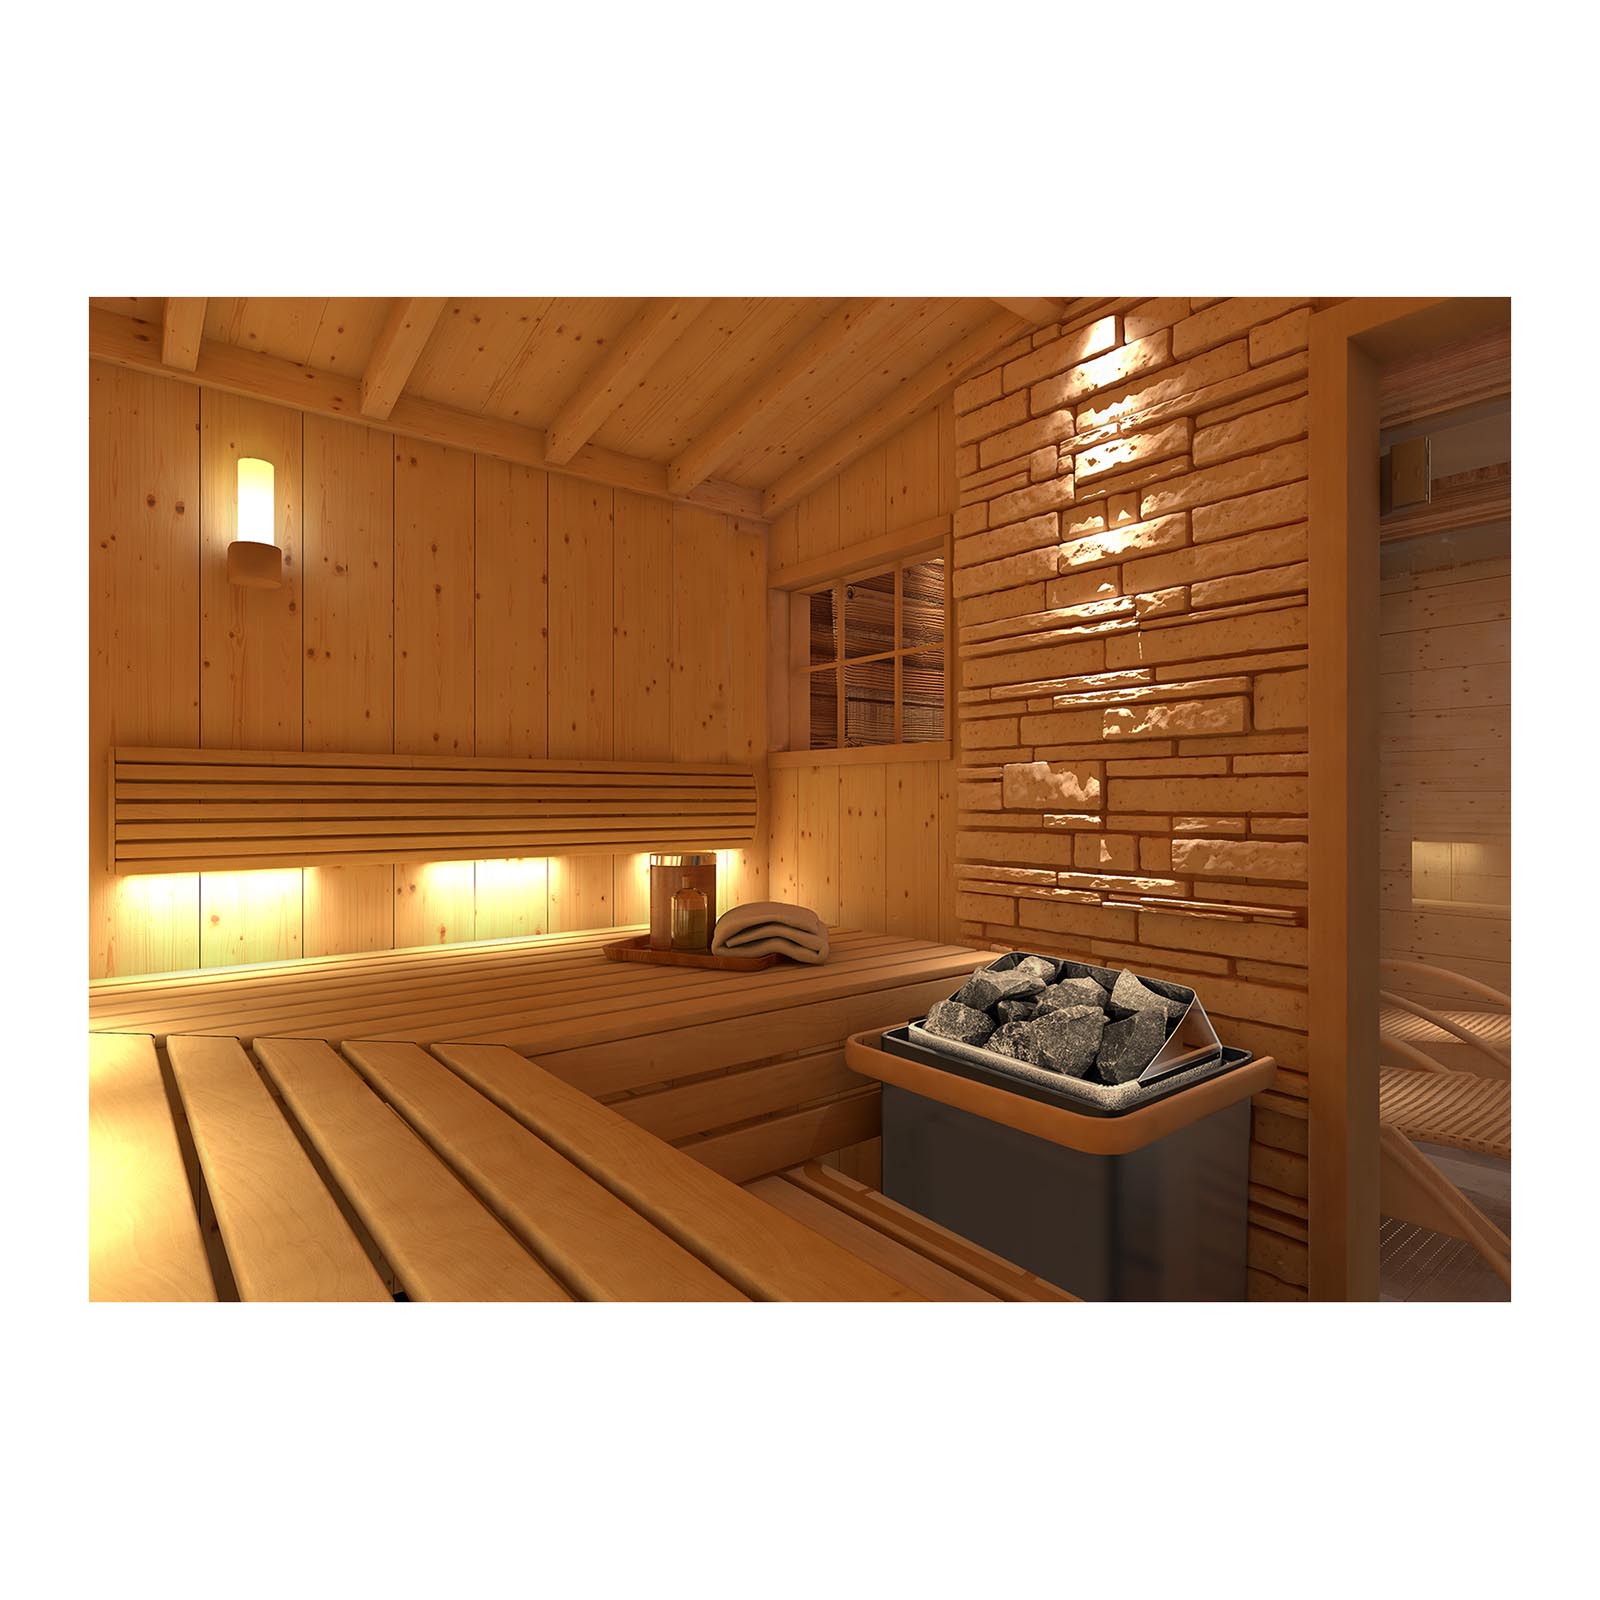 Zestaw Piec do sauny - elektryczny - 6 kW + Panel sterujący do sauny - 400 V 3 N - zabezpieczenie TCO